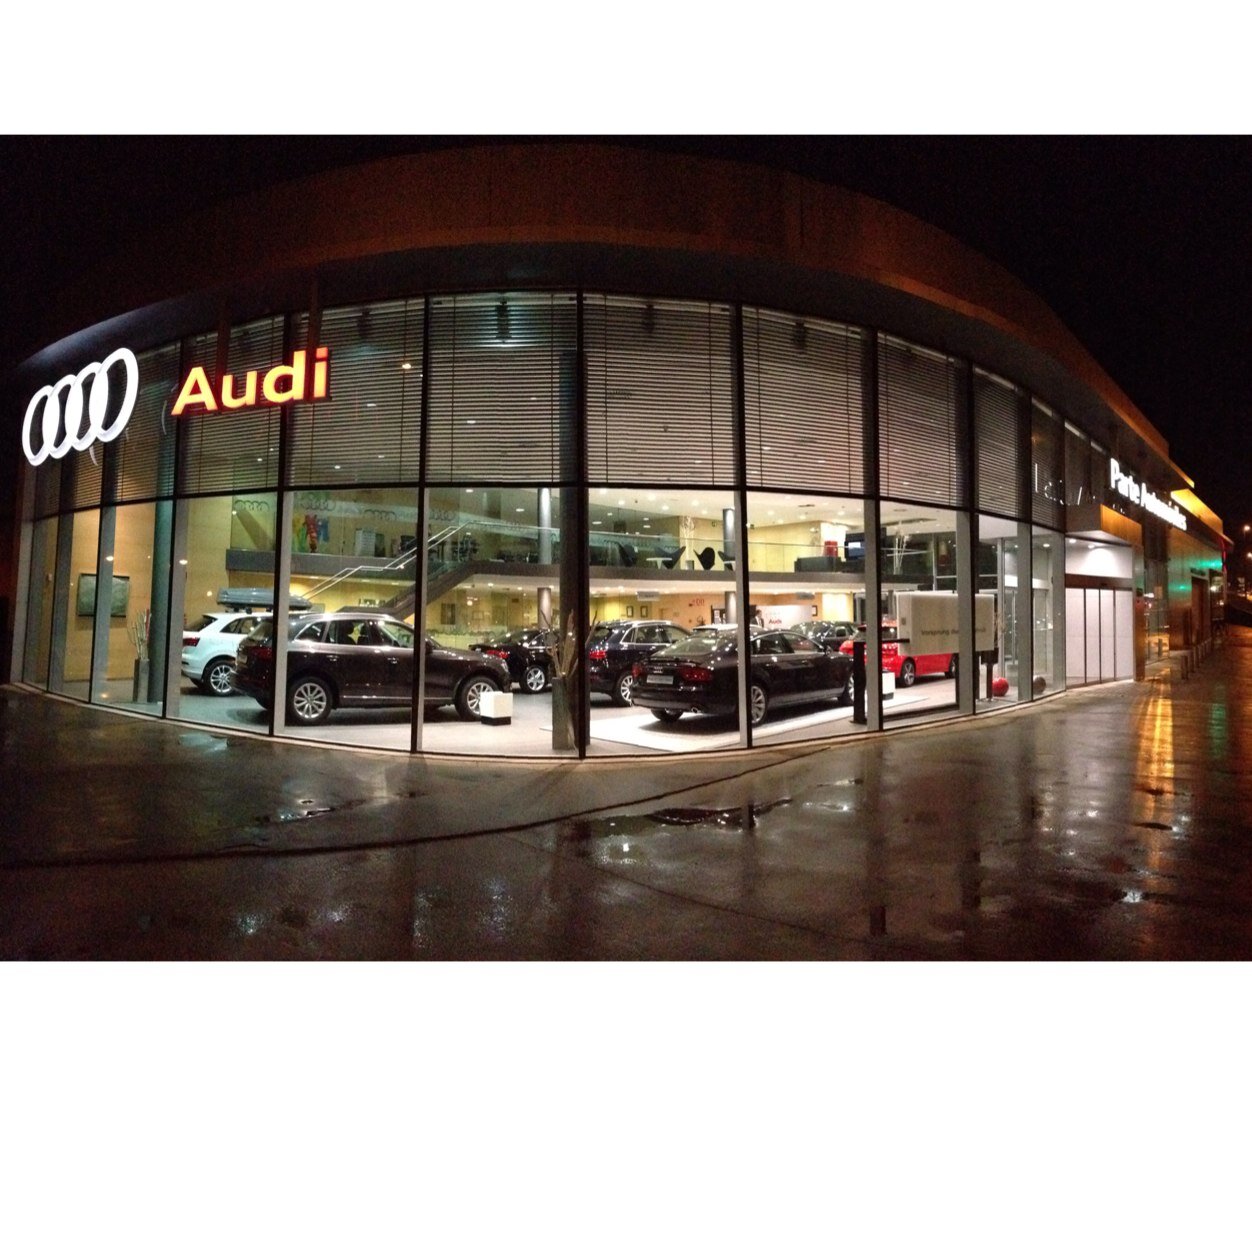 Parte Automoviles, es el Servicio Oficial Audi en Torrelavega. Tfno 942808077.